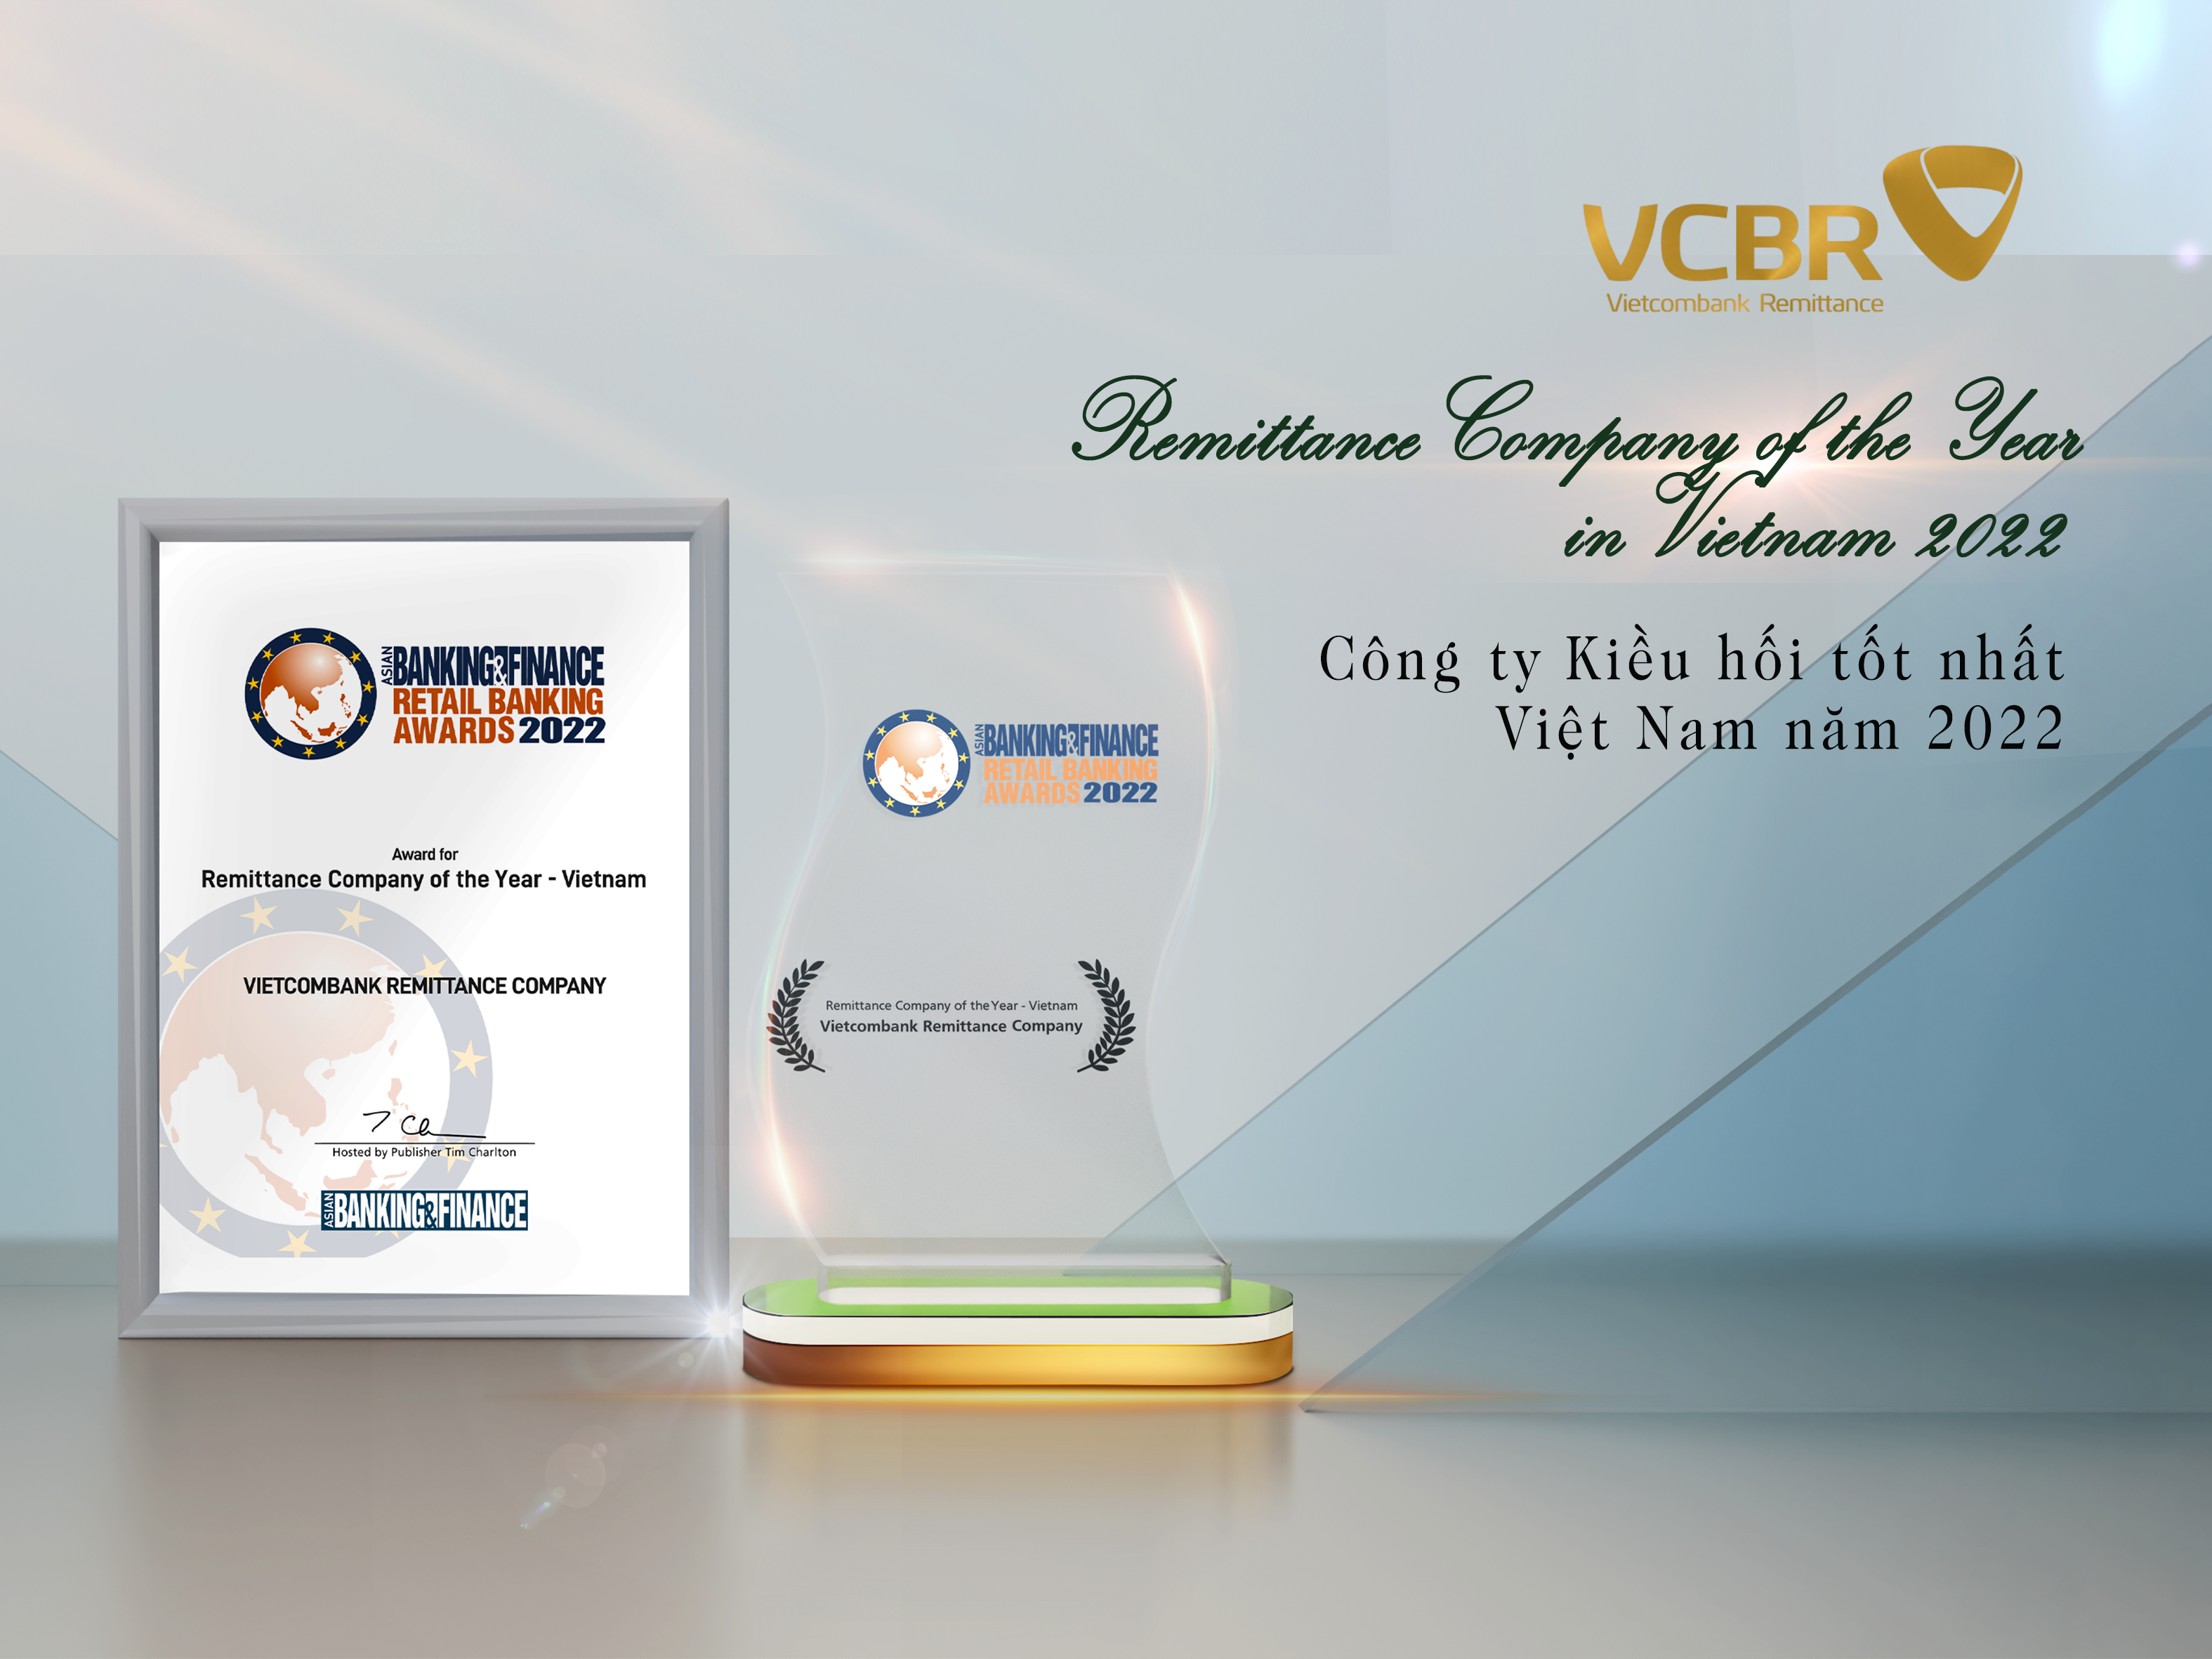 VCBR vinh dự nhận giải thưởng “Công ty kiều hối tốt nhất Việt Nam năm 2022”